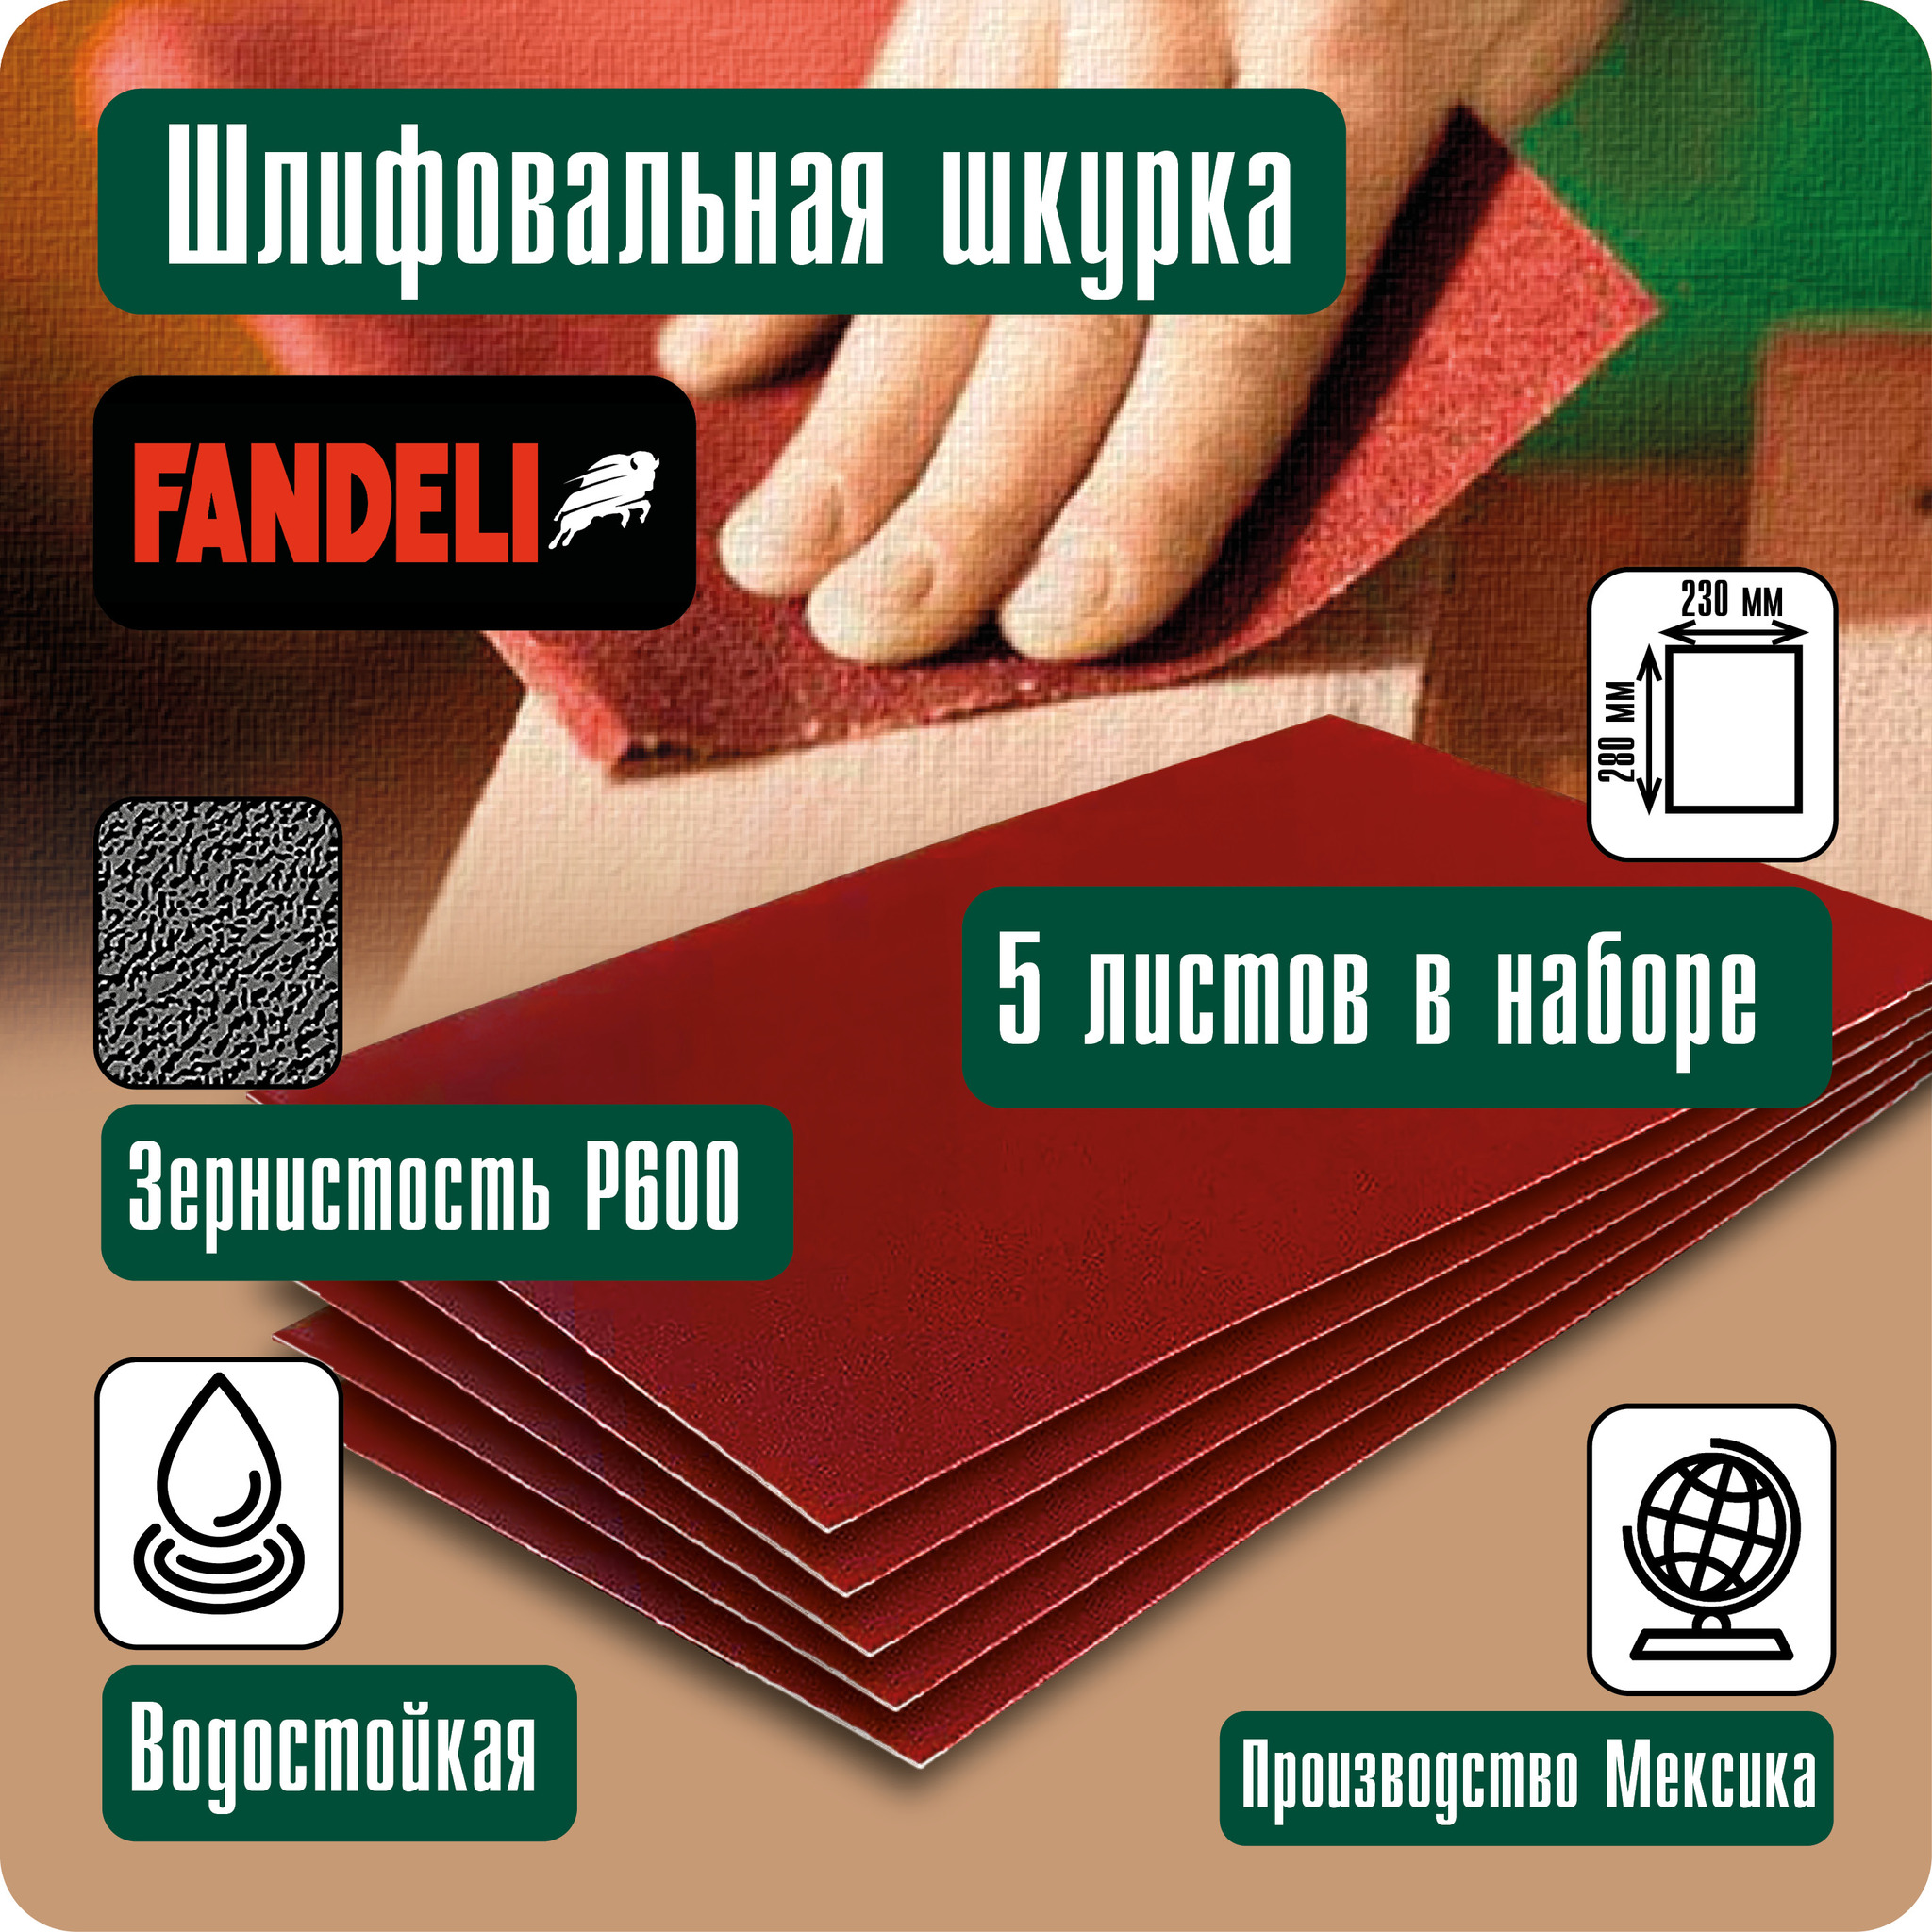 Наждачная бумага Fandeli шлифовальная шкурка 5шт P600 5ФШ600 наждачная бумага fandeli шлифовальная шкурка 10шт p400 10фш400